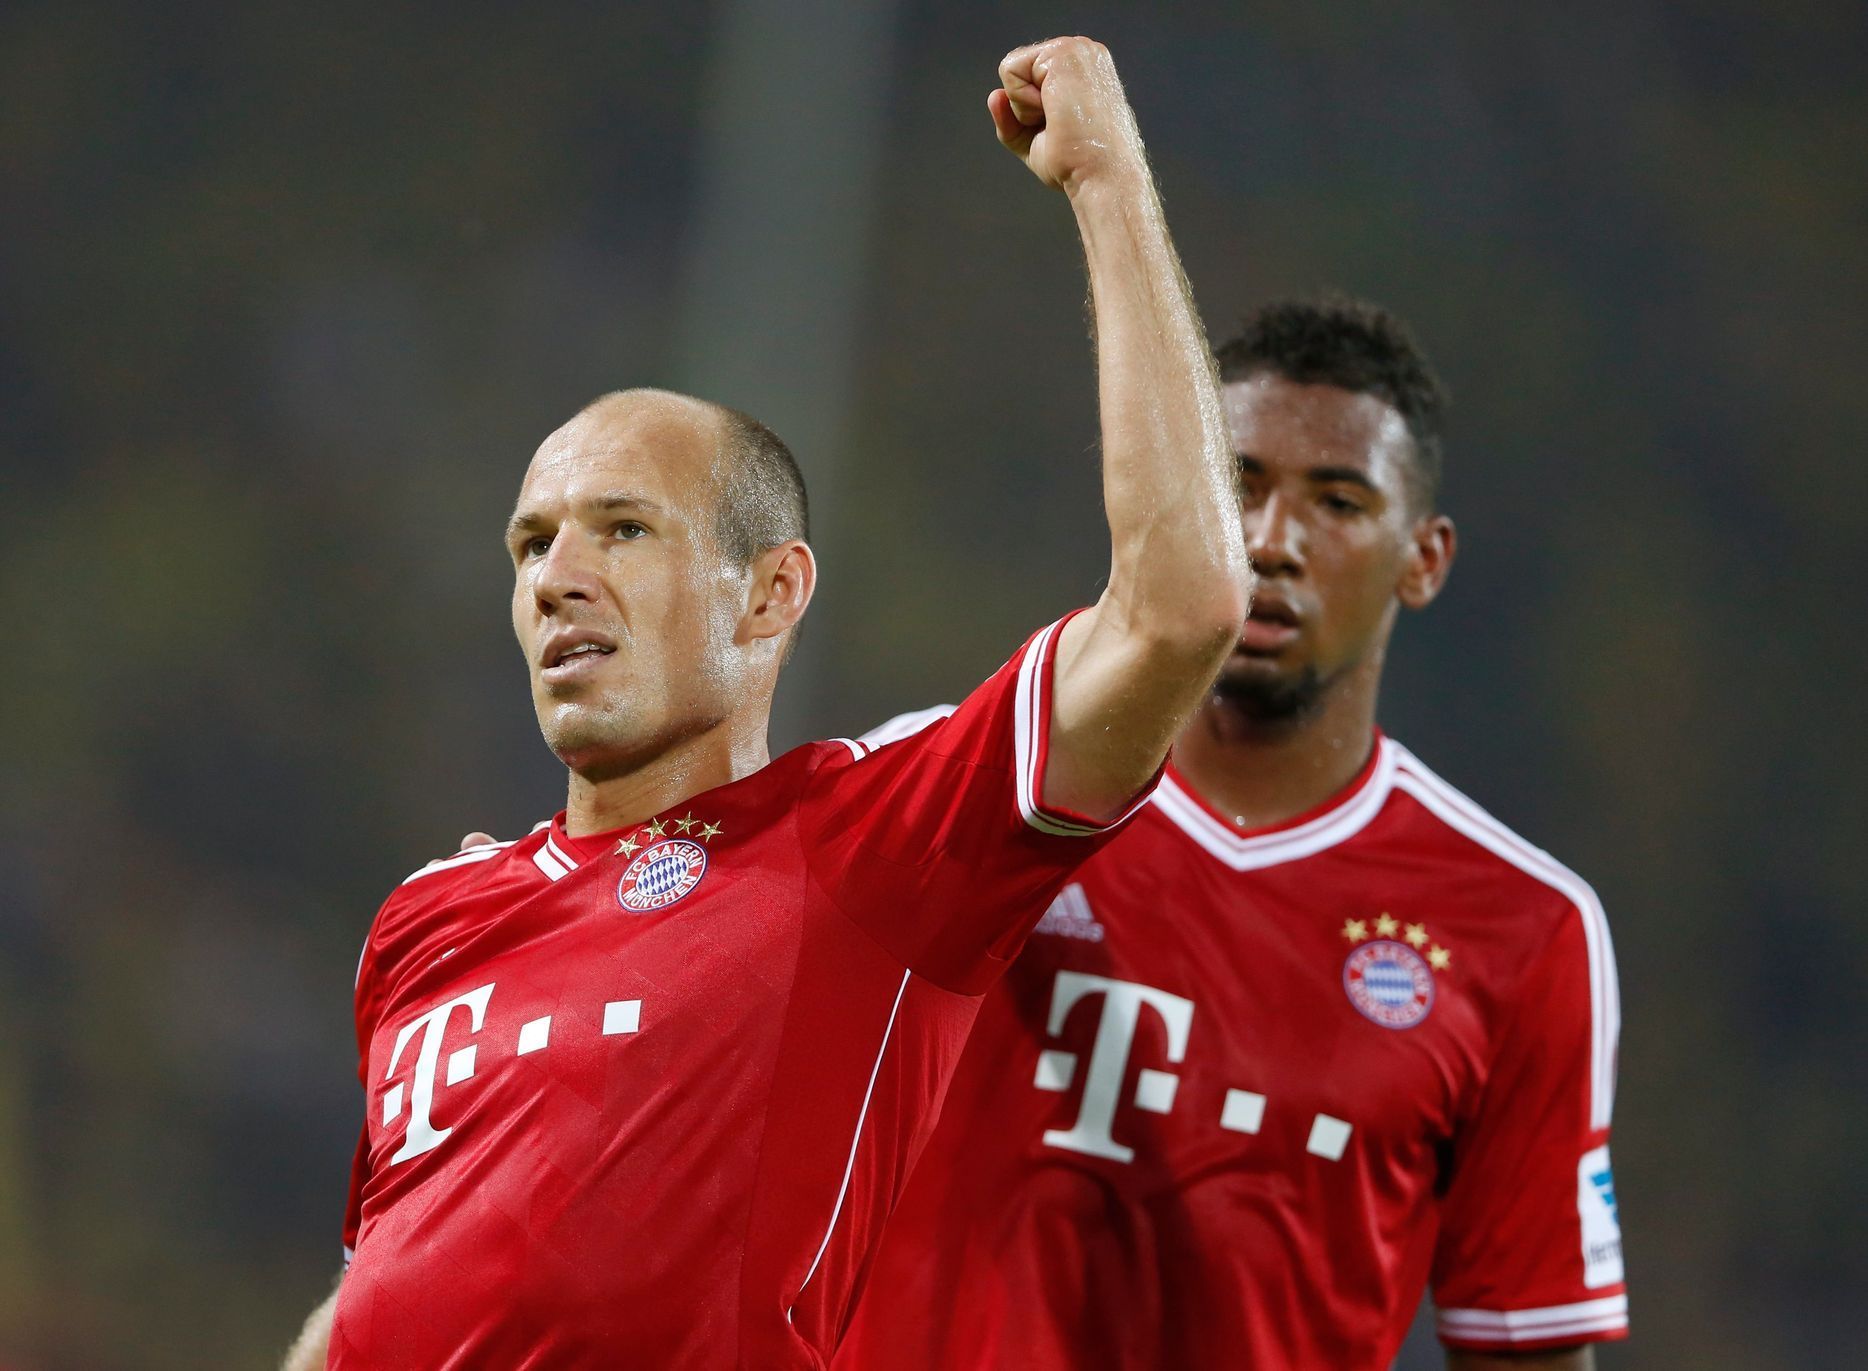 Fotbal, německý Superpohár, Dortmund - Bayern: Arjen Robben a Jerome Boateng